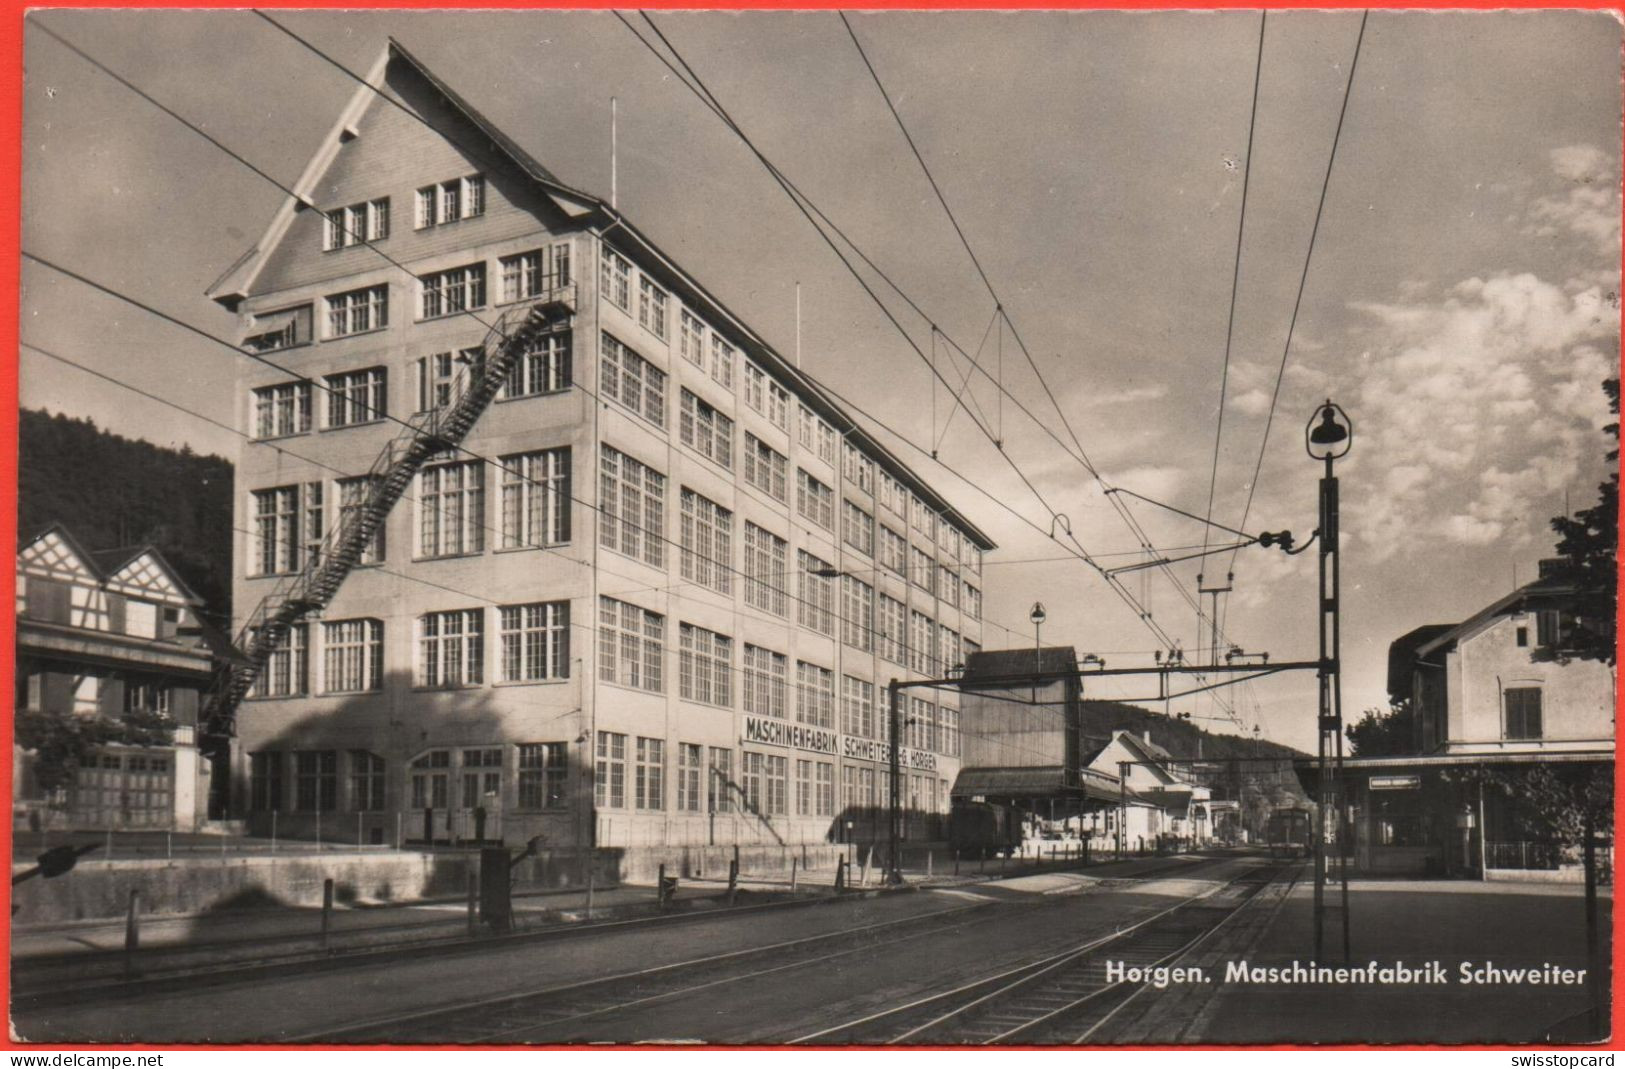 HORGEN Maschinenfabrik Schweiter - Horgen